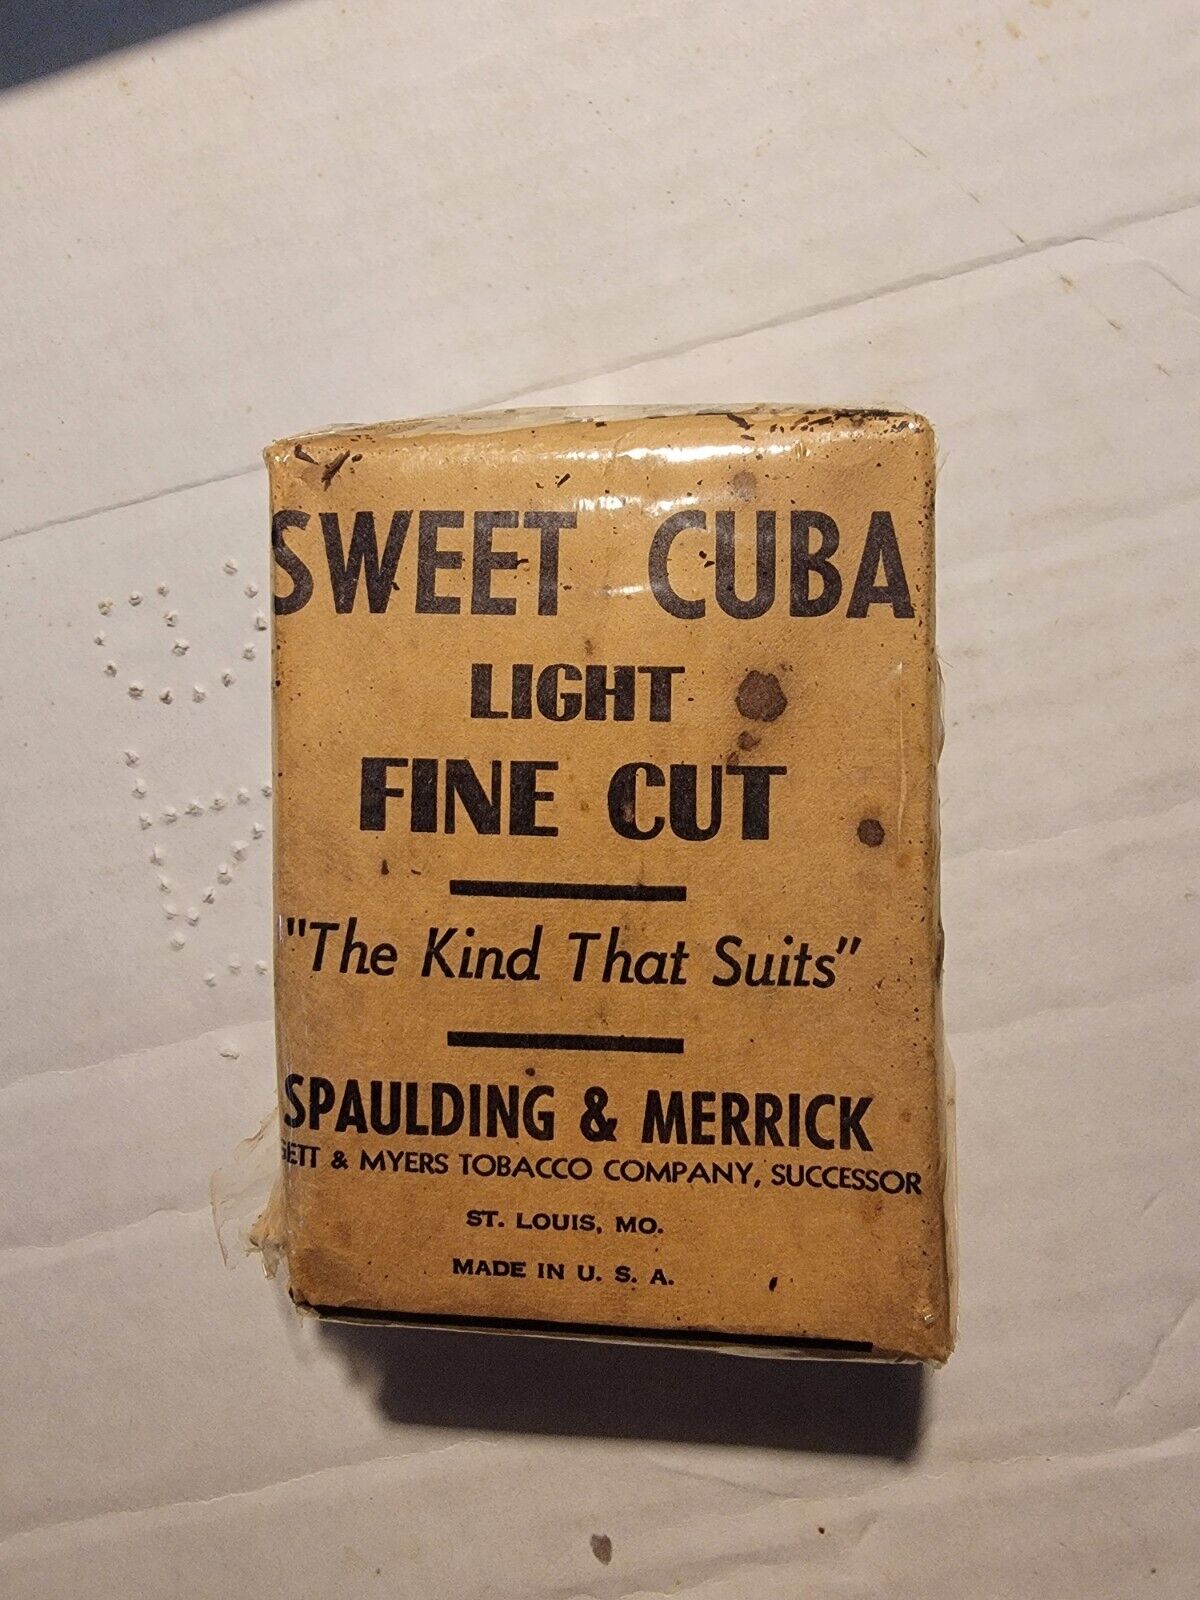  VERY RARE SWEET CUBA FINE CUT CHEWING TOBACCO PACK CIRCA 1900